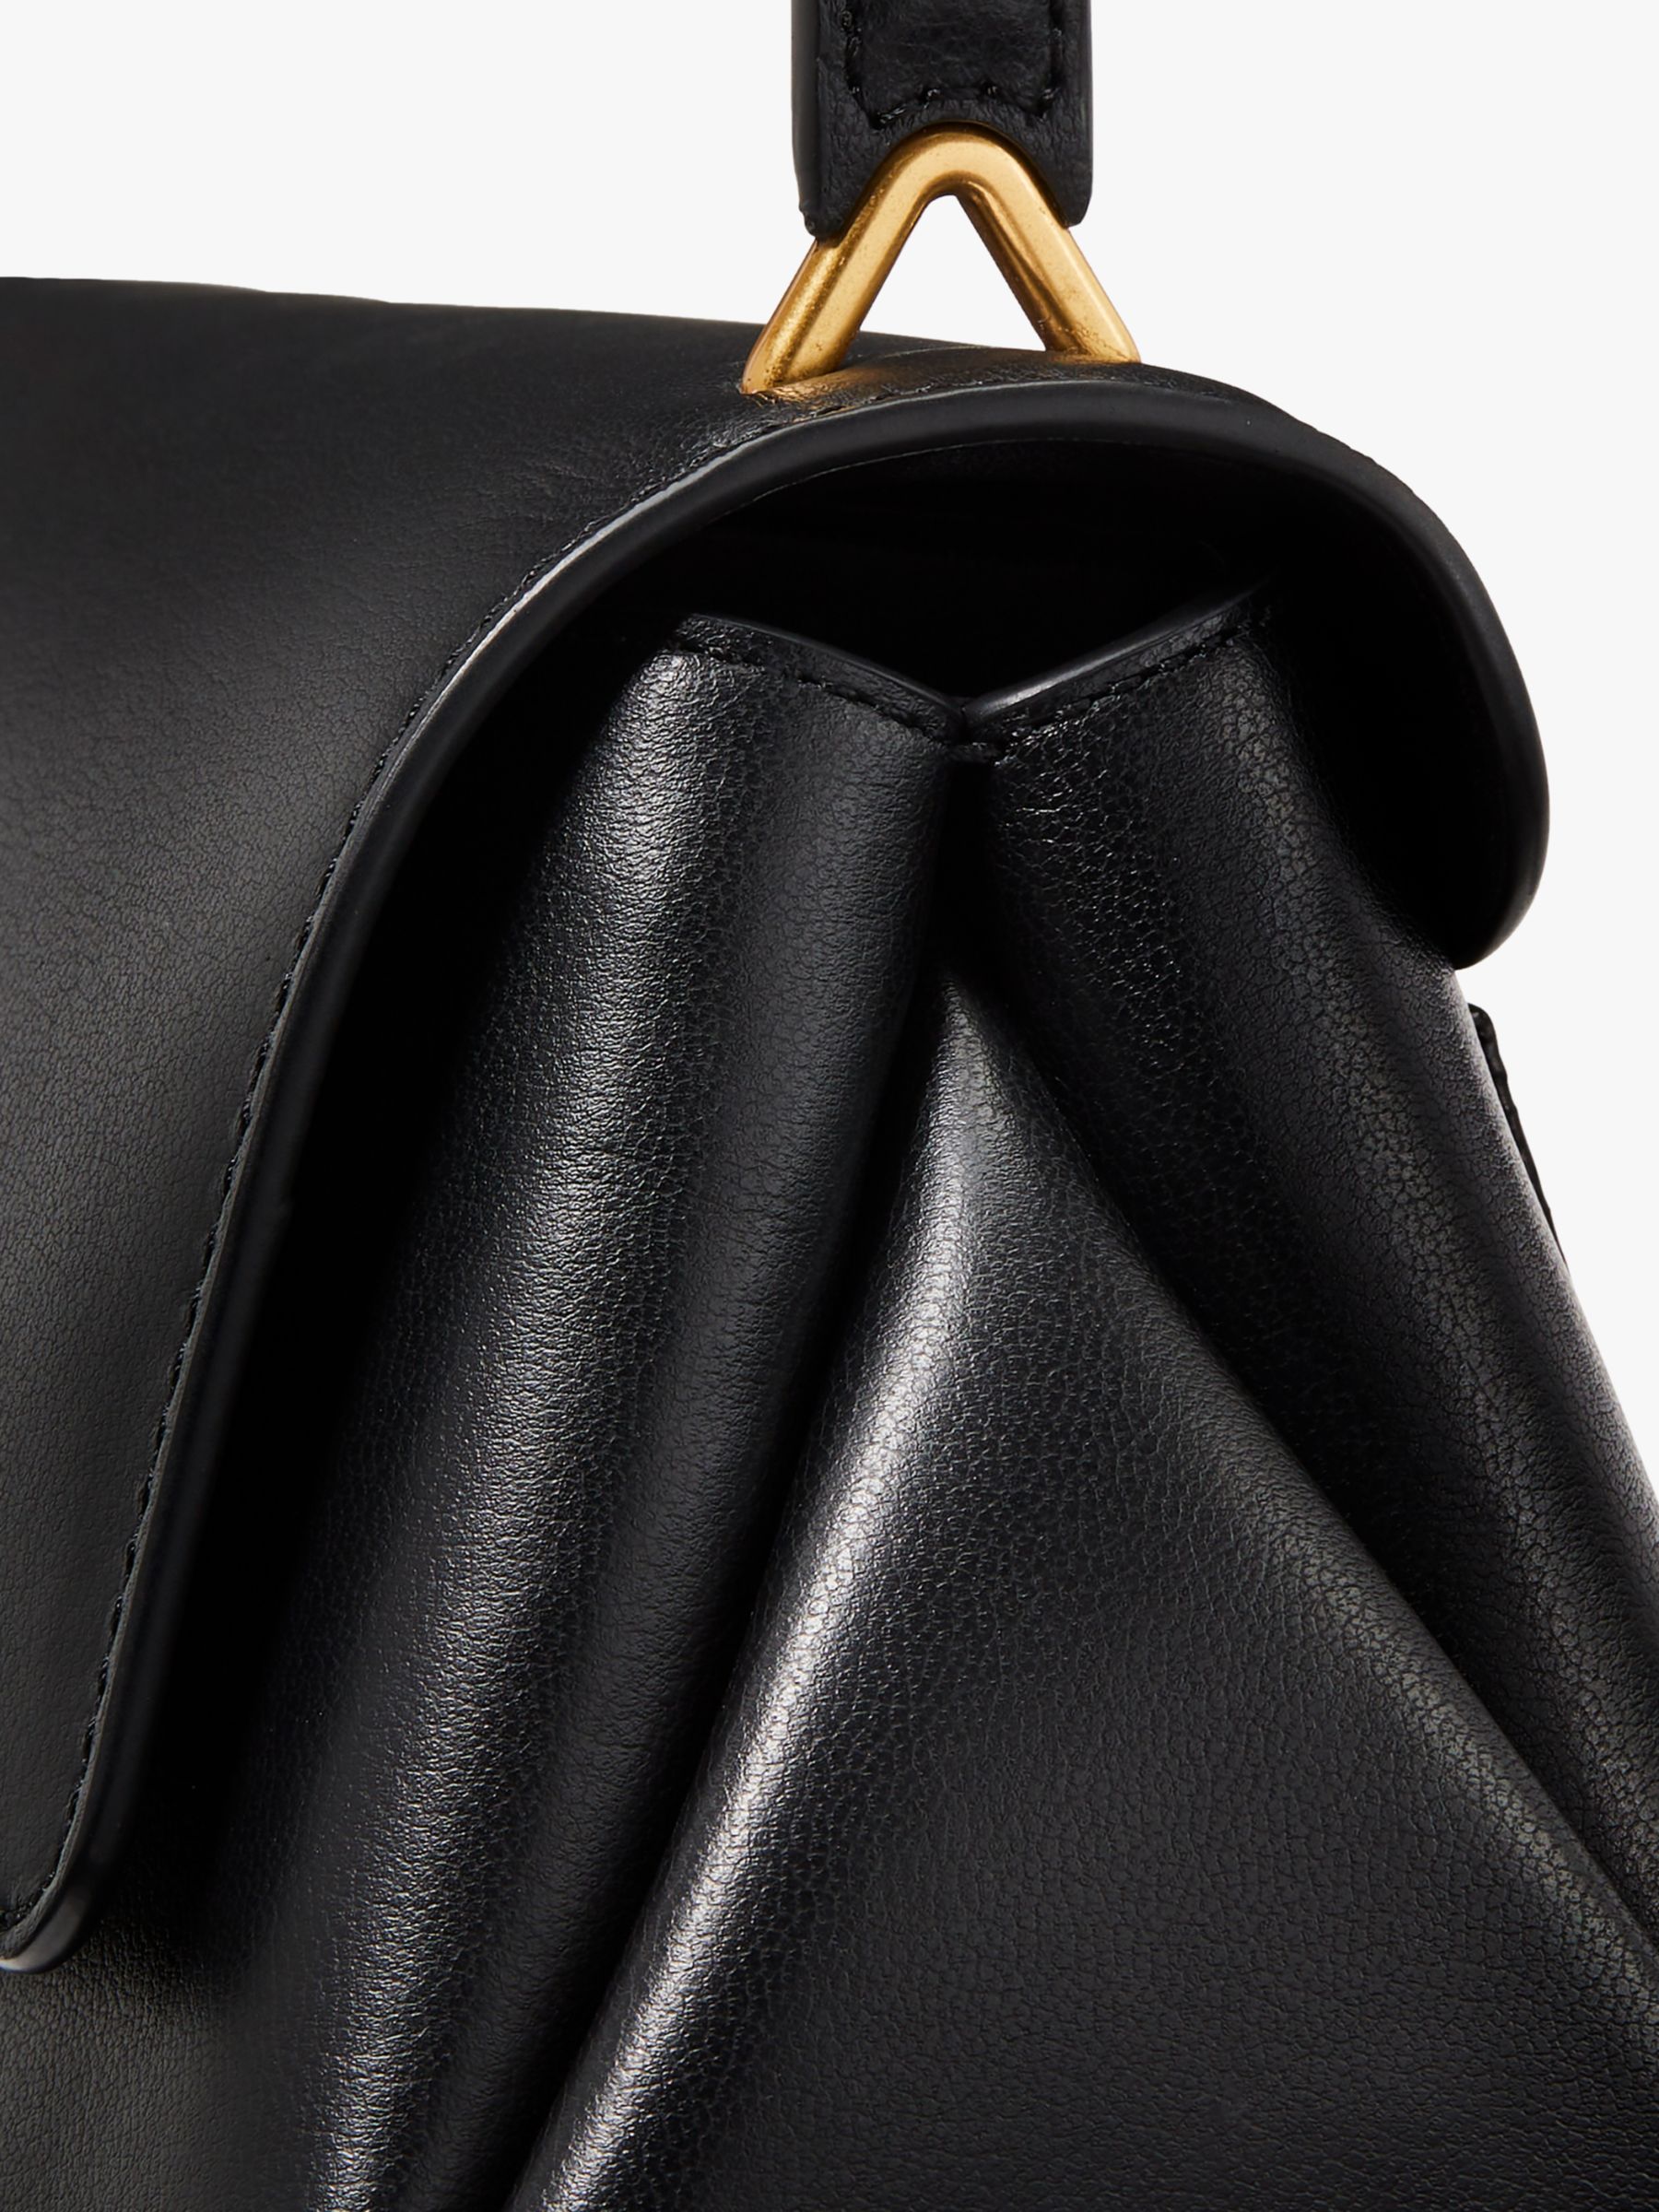 kate spade new york Grace Leather Shoulder Bag, Black